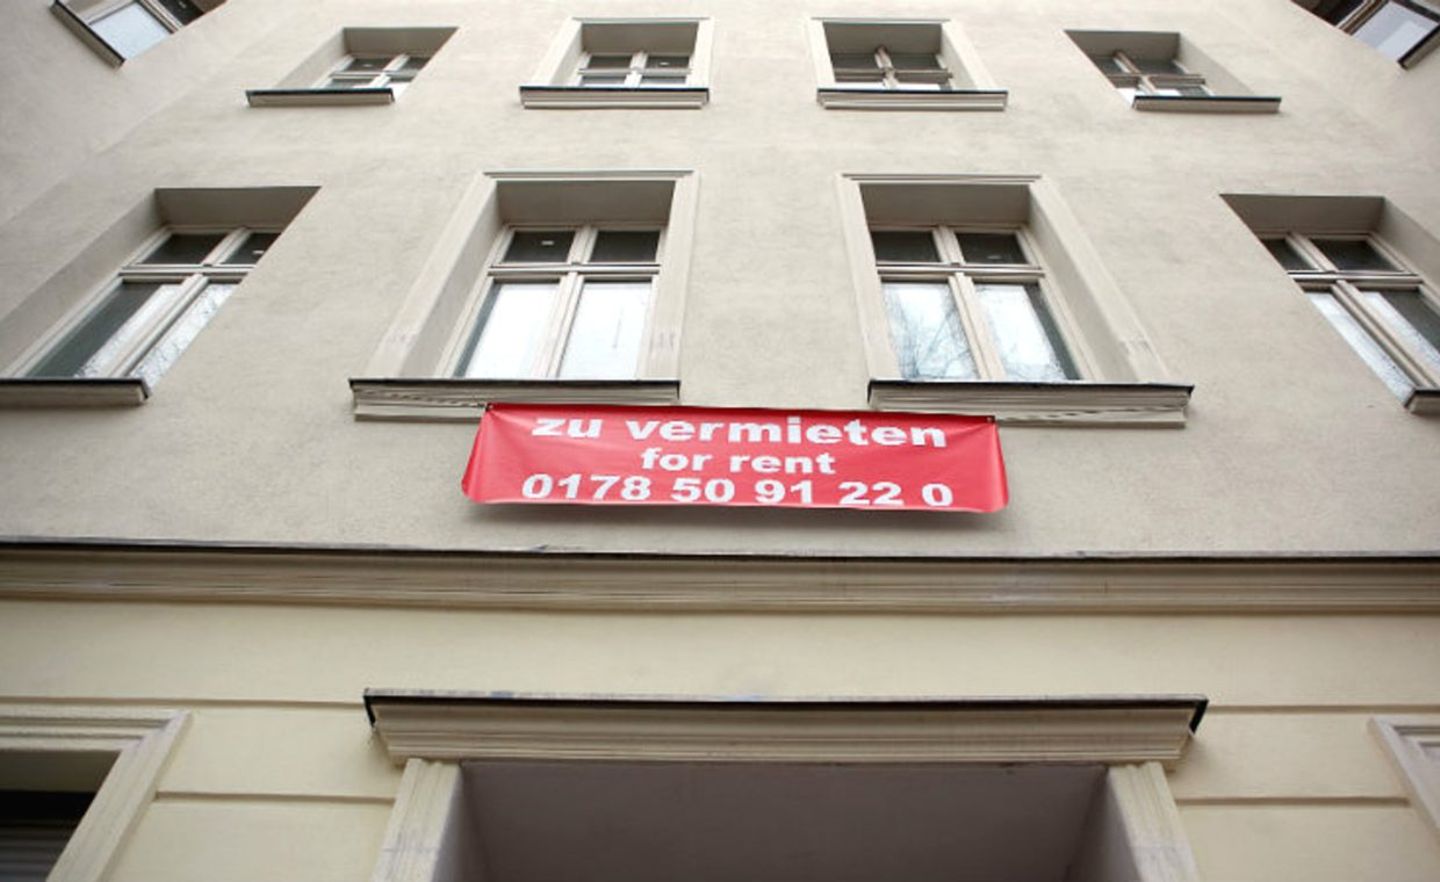 Freie und bezahlbare Mietwohnungen sind selten geworden in Deutschland